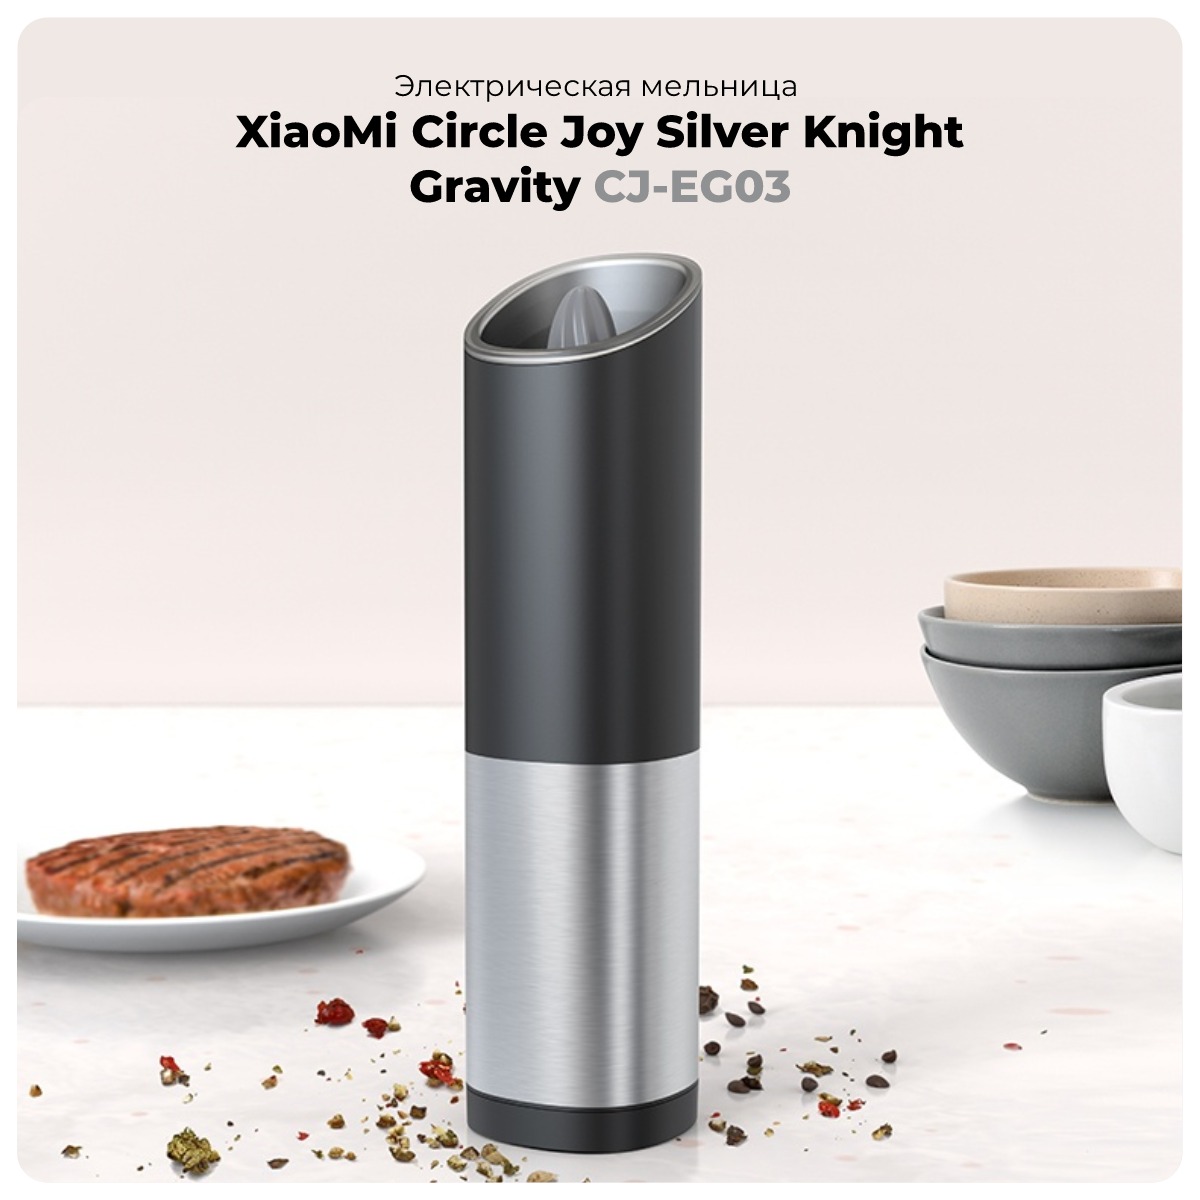 XiaoMi-Circle-Joy-Silver-Knight-Gravity-CJ-EG03-01